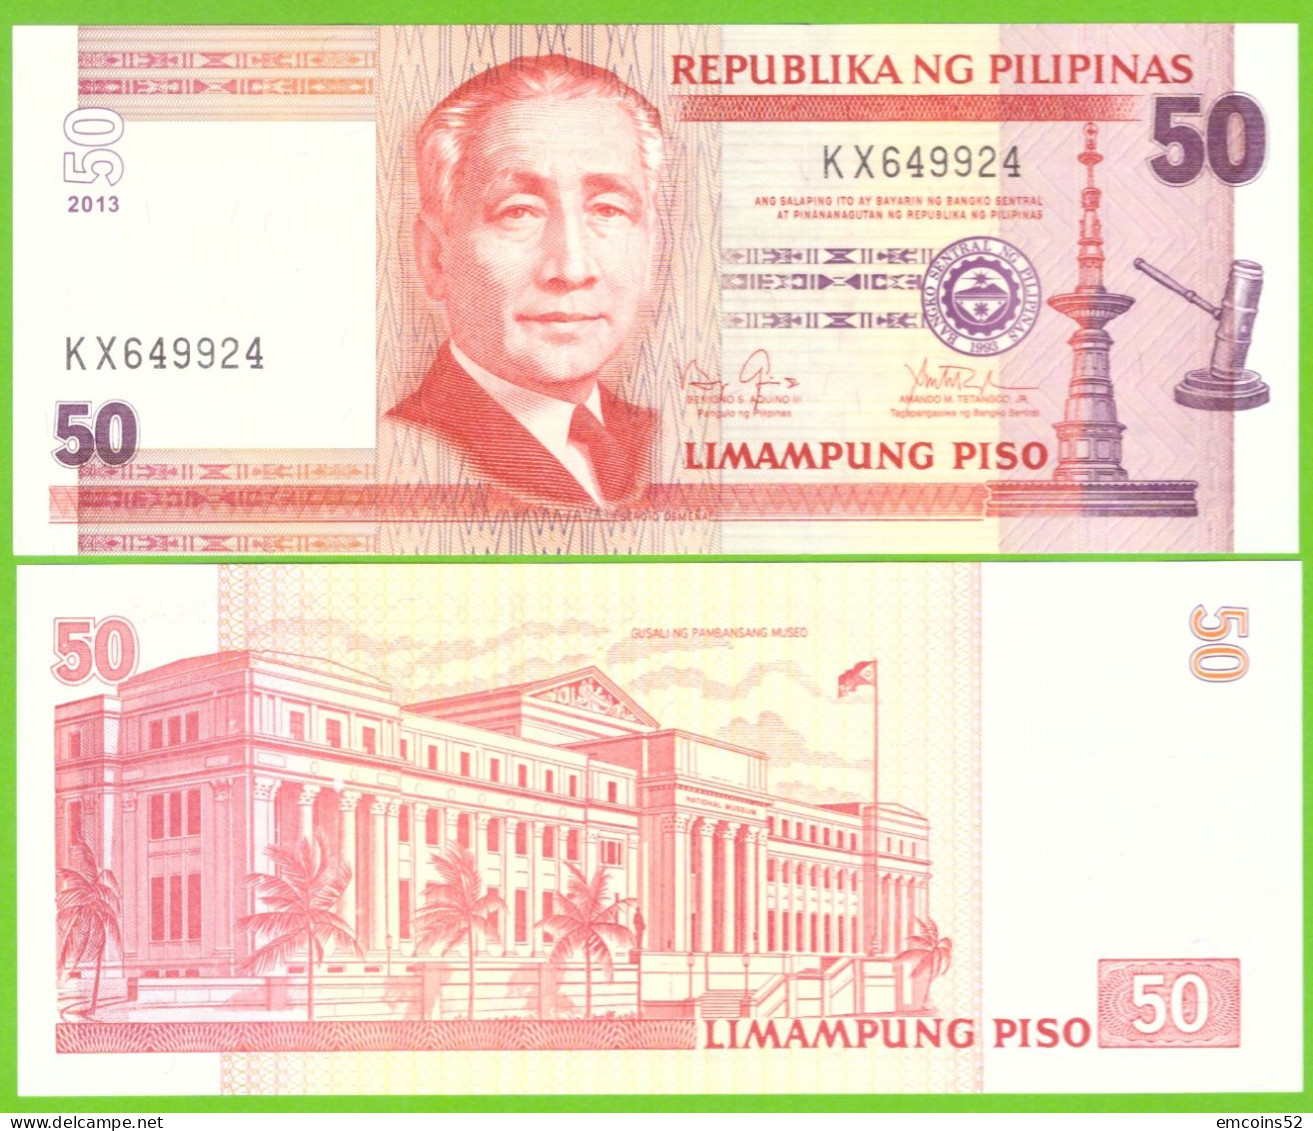 PHILIPPINES 50 PISO 2013  P-193d  UNC - Philippines